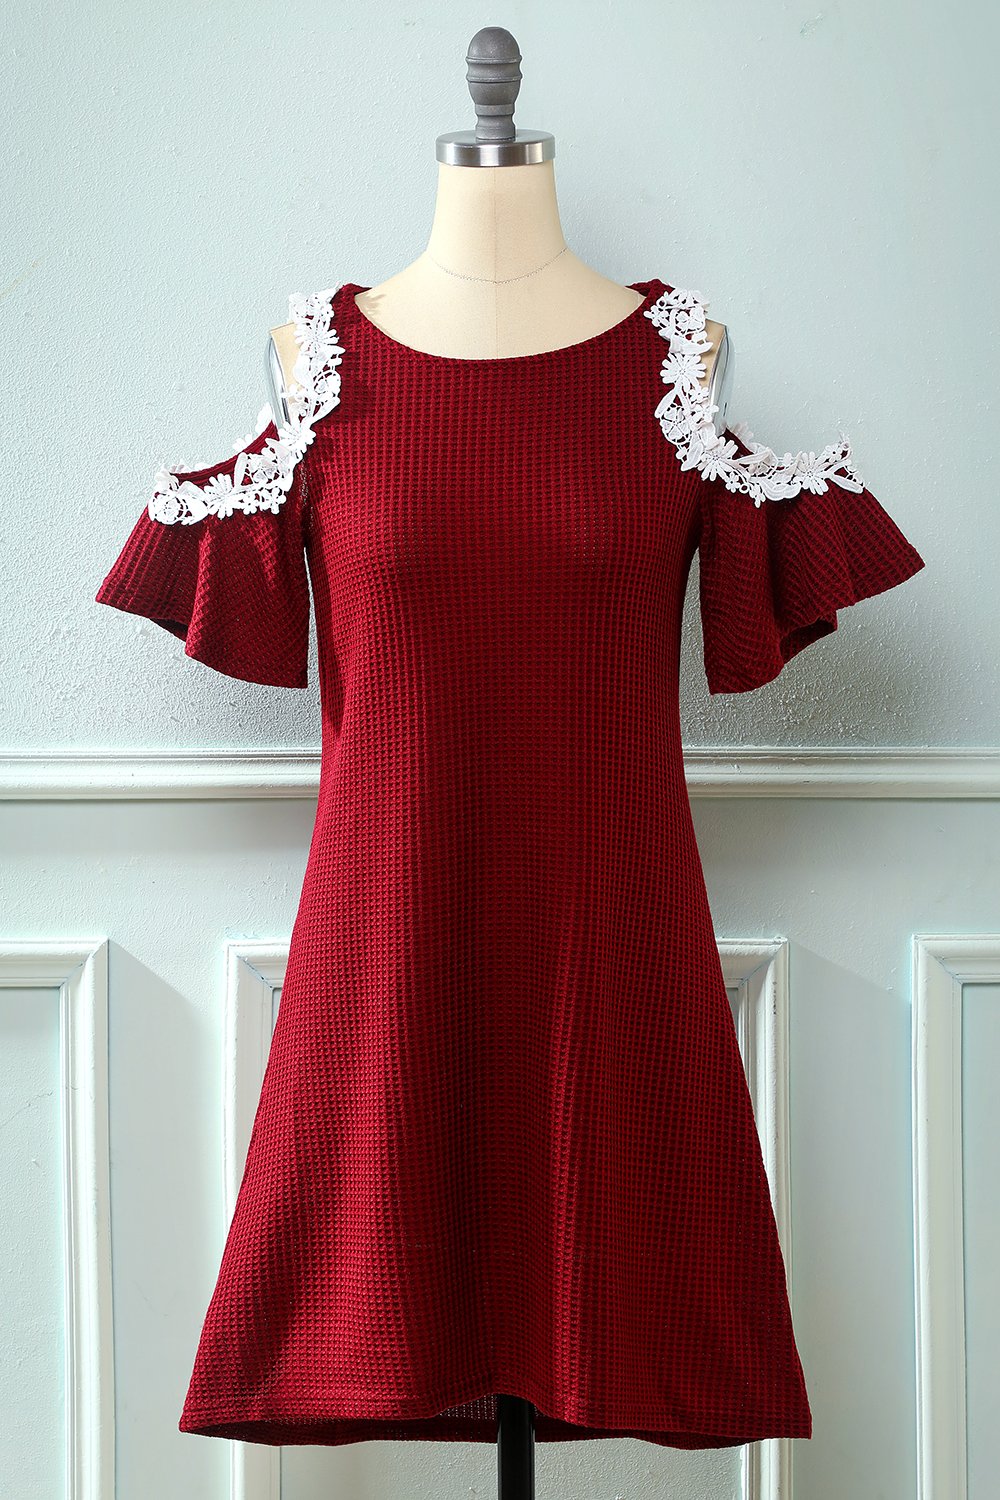 Mørk rød fra skulderen strikket kjole med applikationer